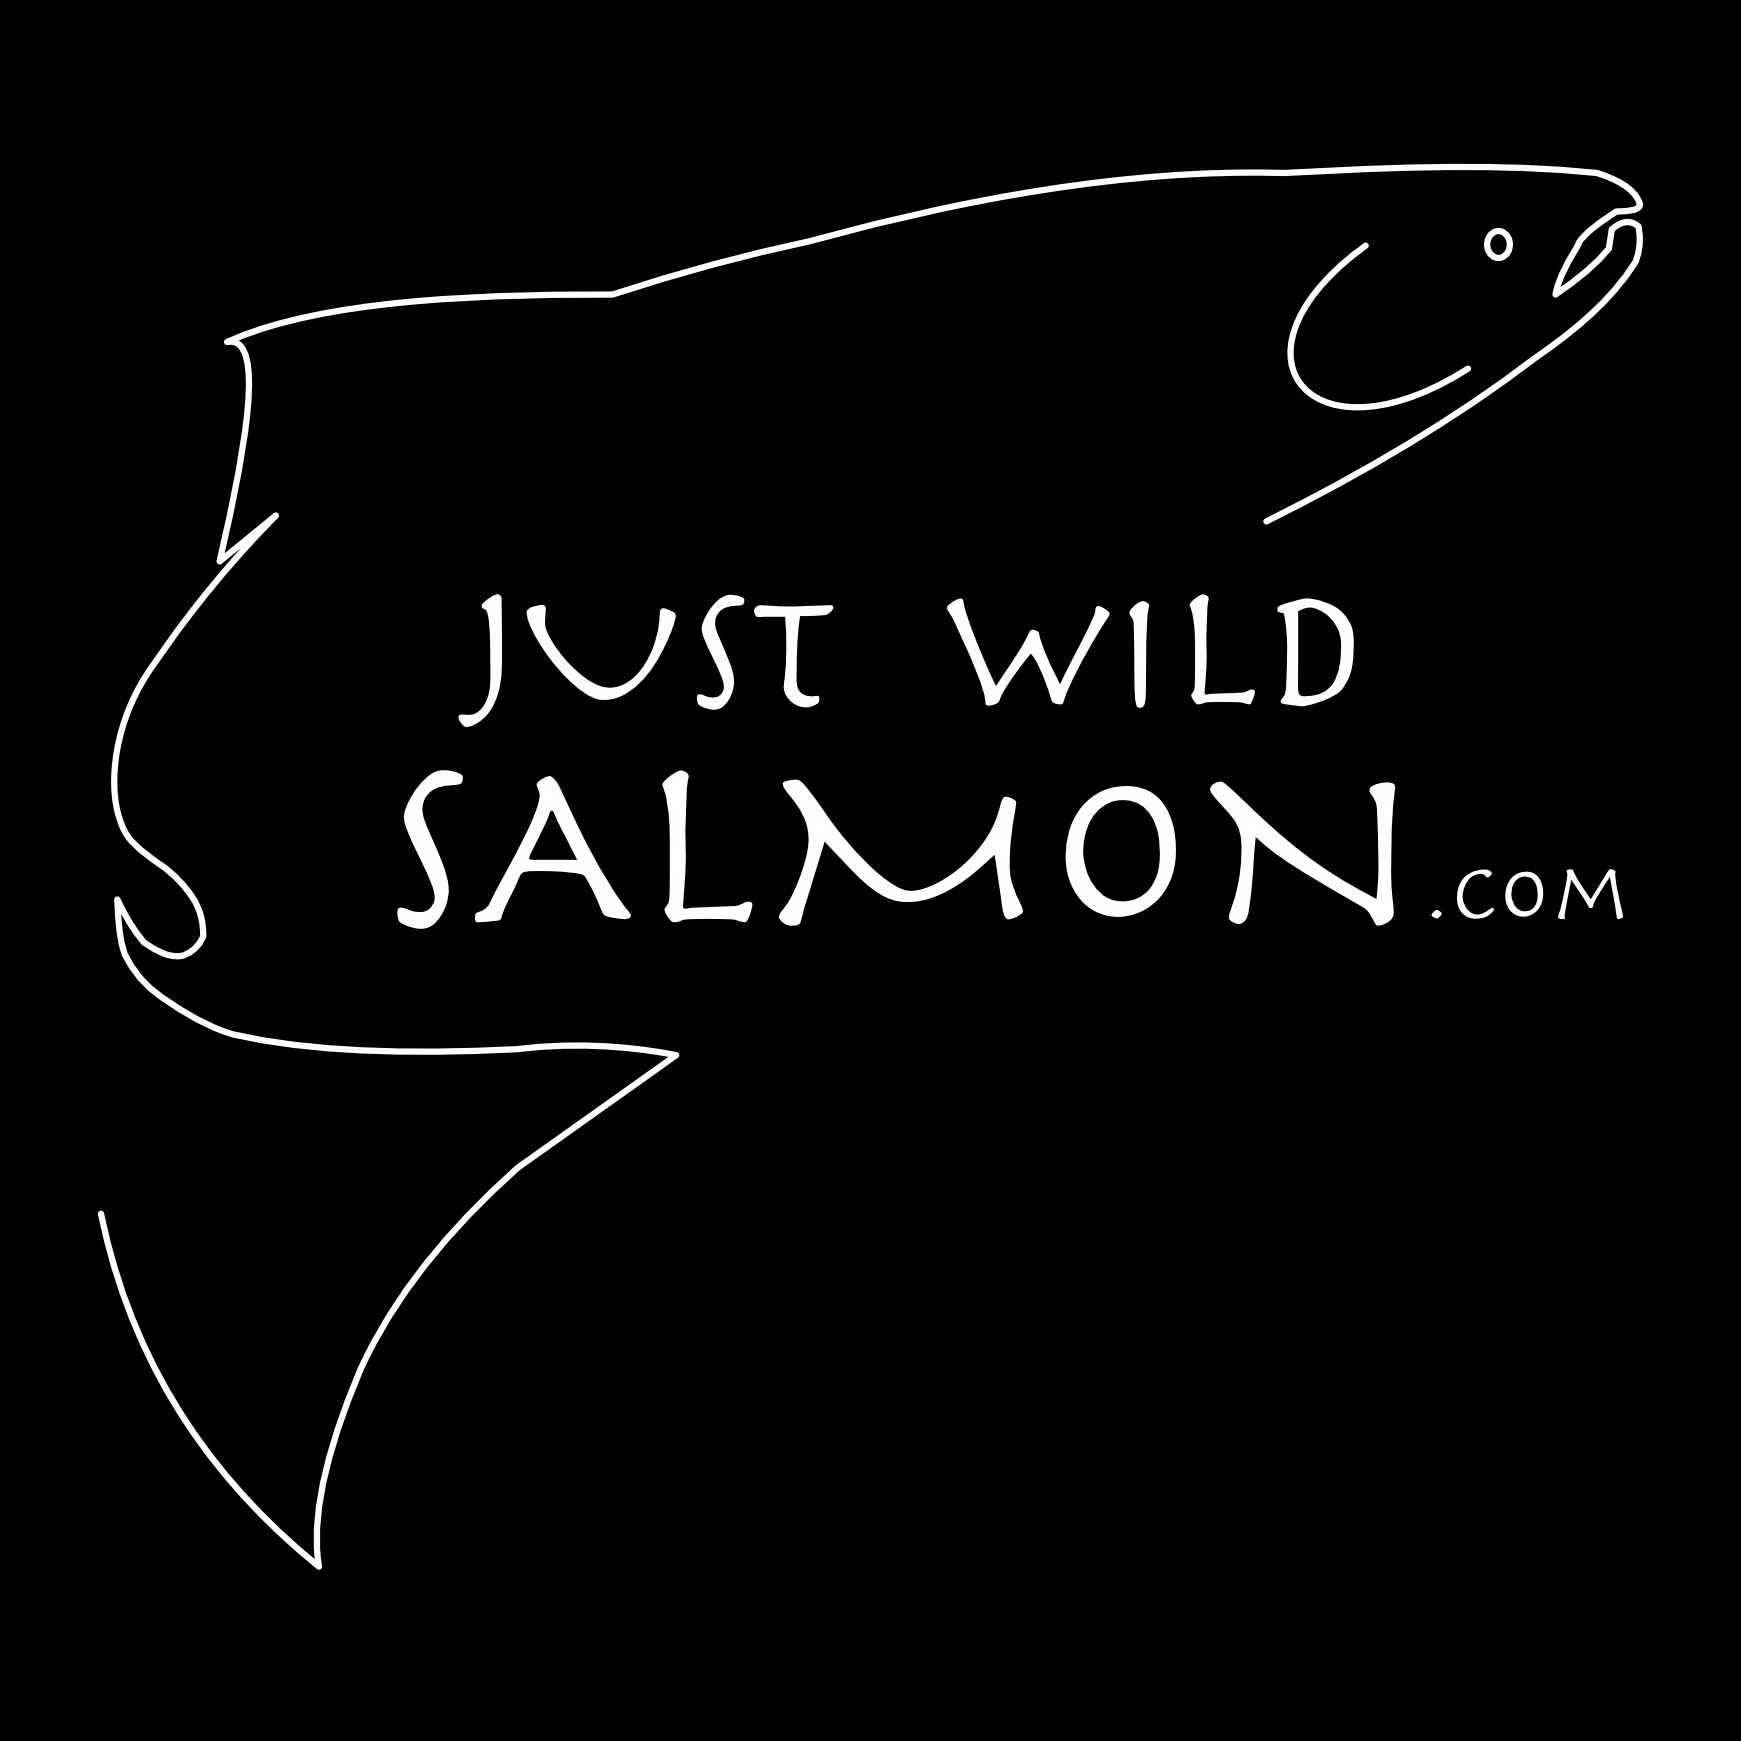 Just Wild Salmon